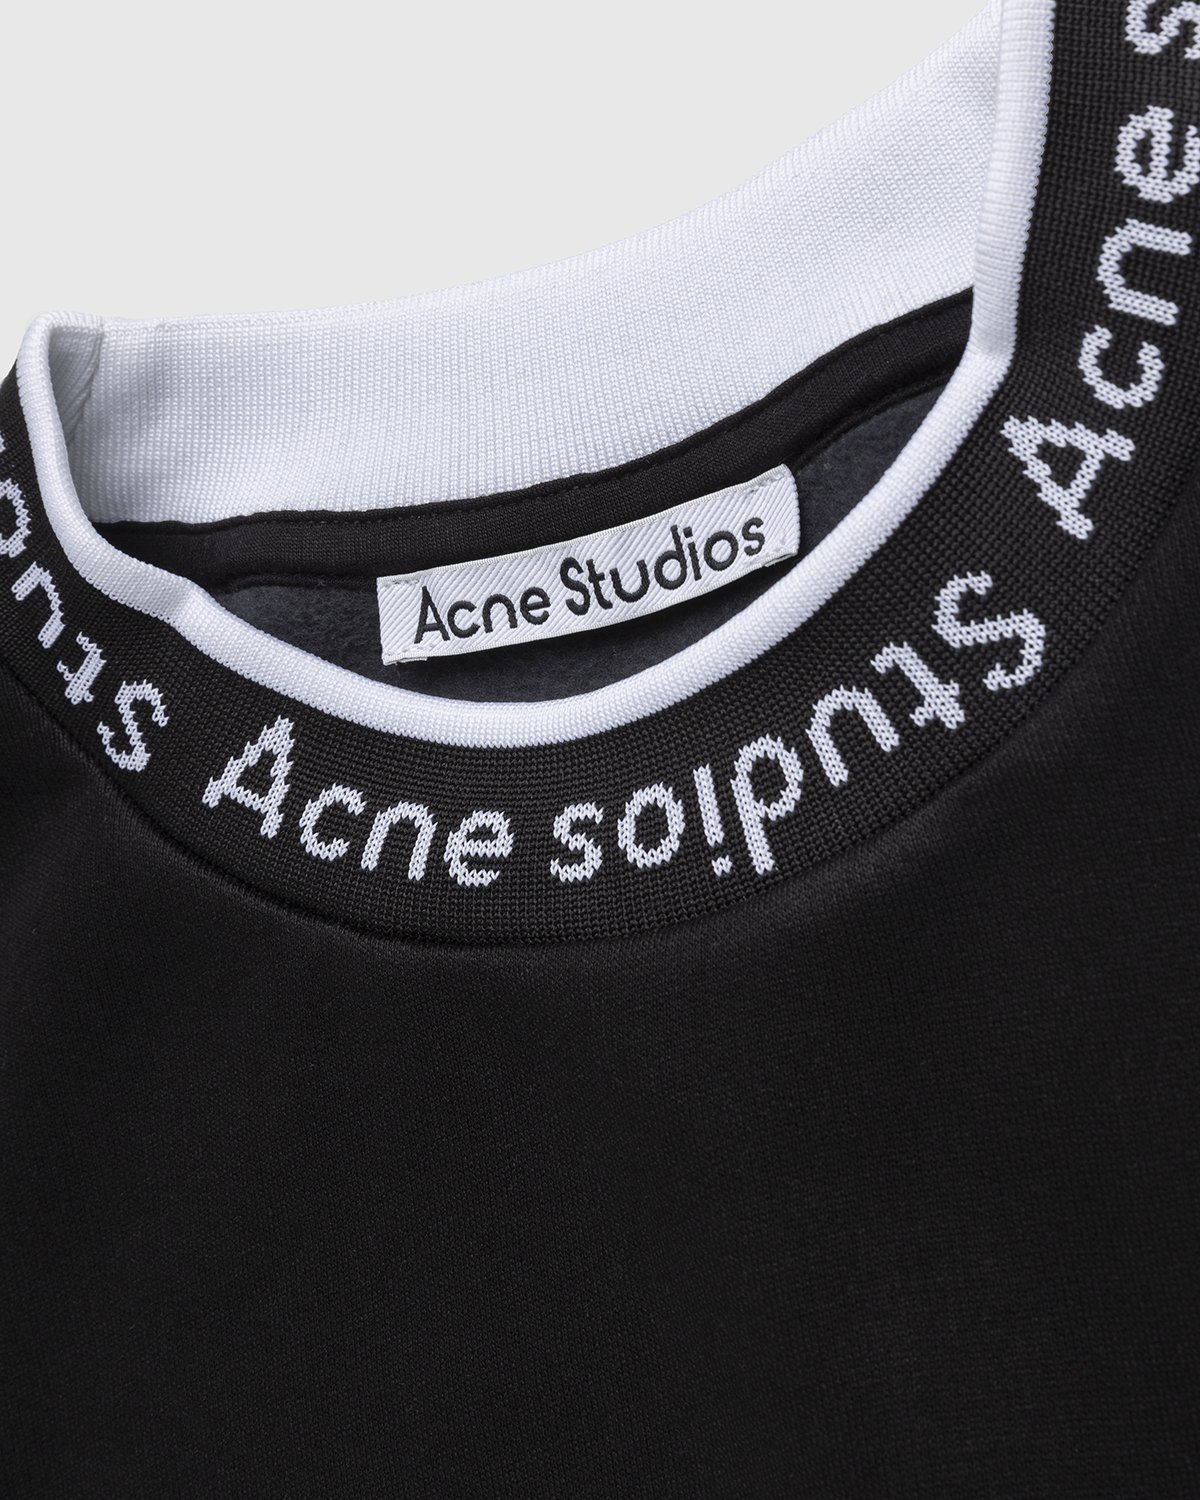 Acne Studios - Logo Rib Sweatshirt Black - Clothing - Black - Image 4